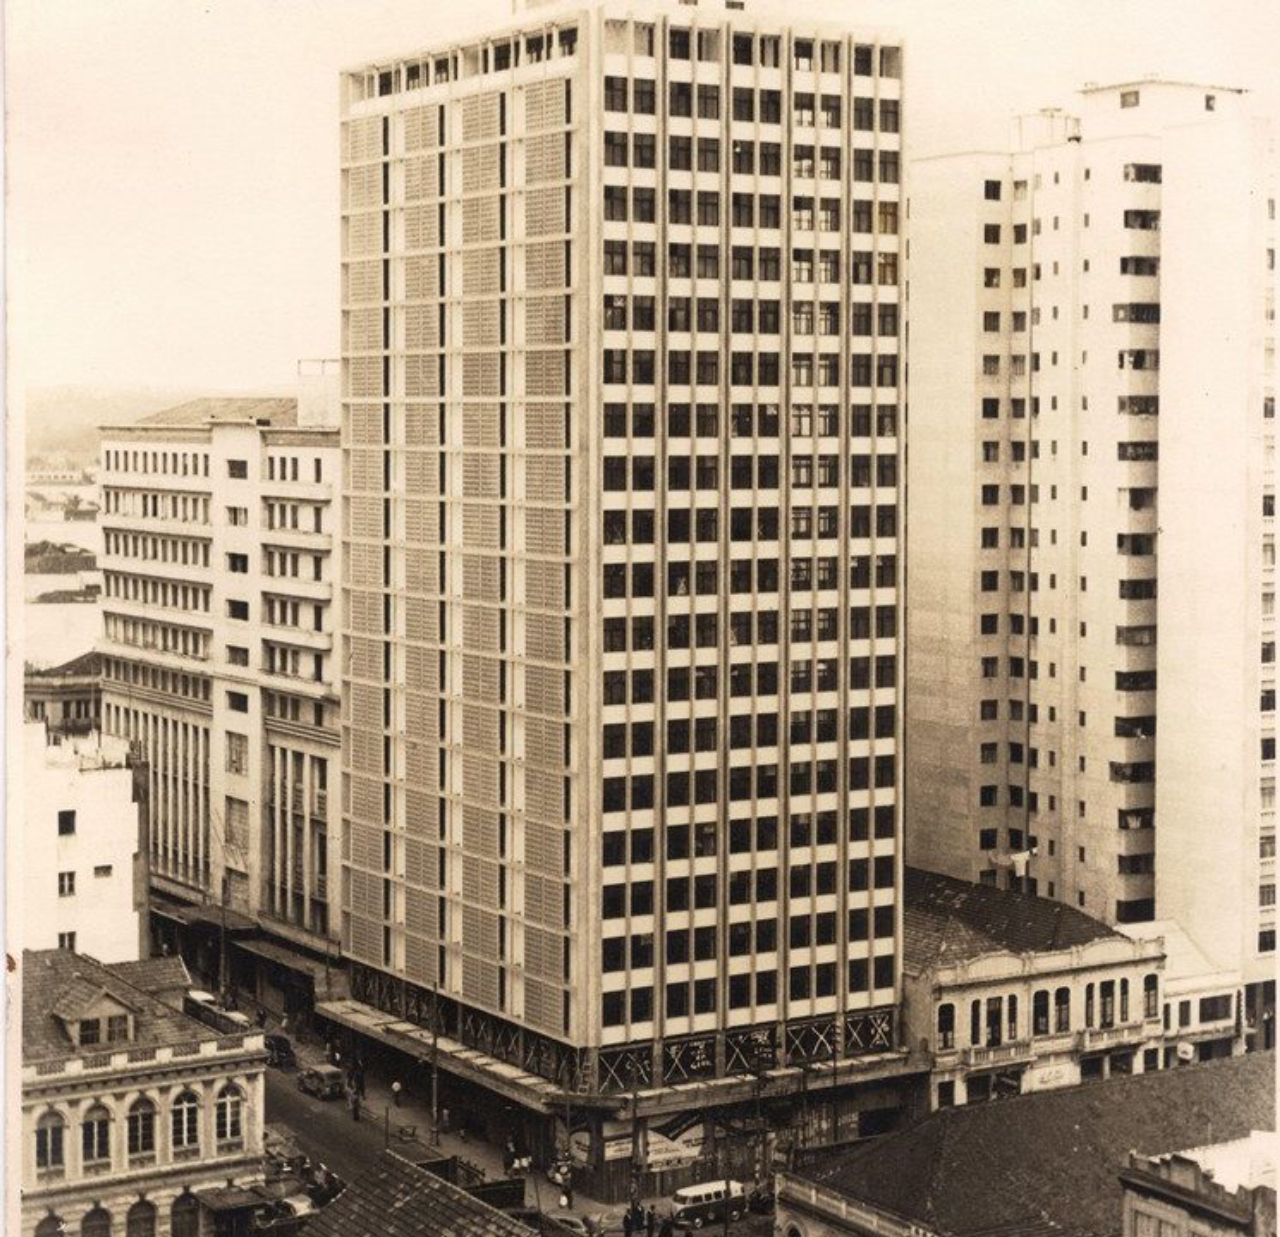 O Edifício Barão do Rio Branco, com 20 andares, é um exemplo da arquitetura modernista em que a forma é resultado da função do elemento.